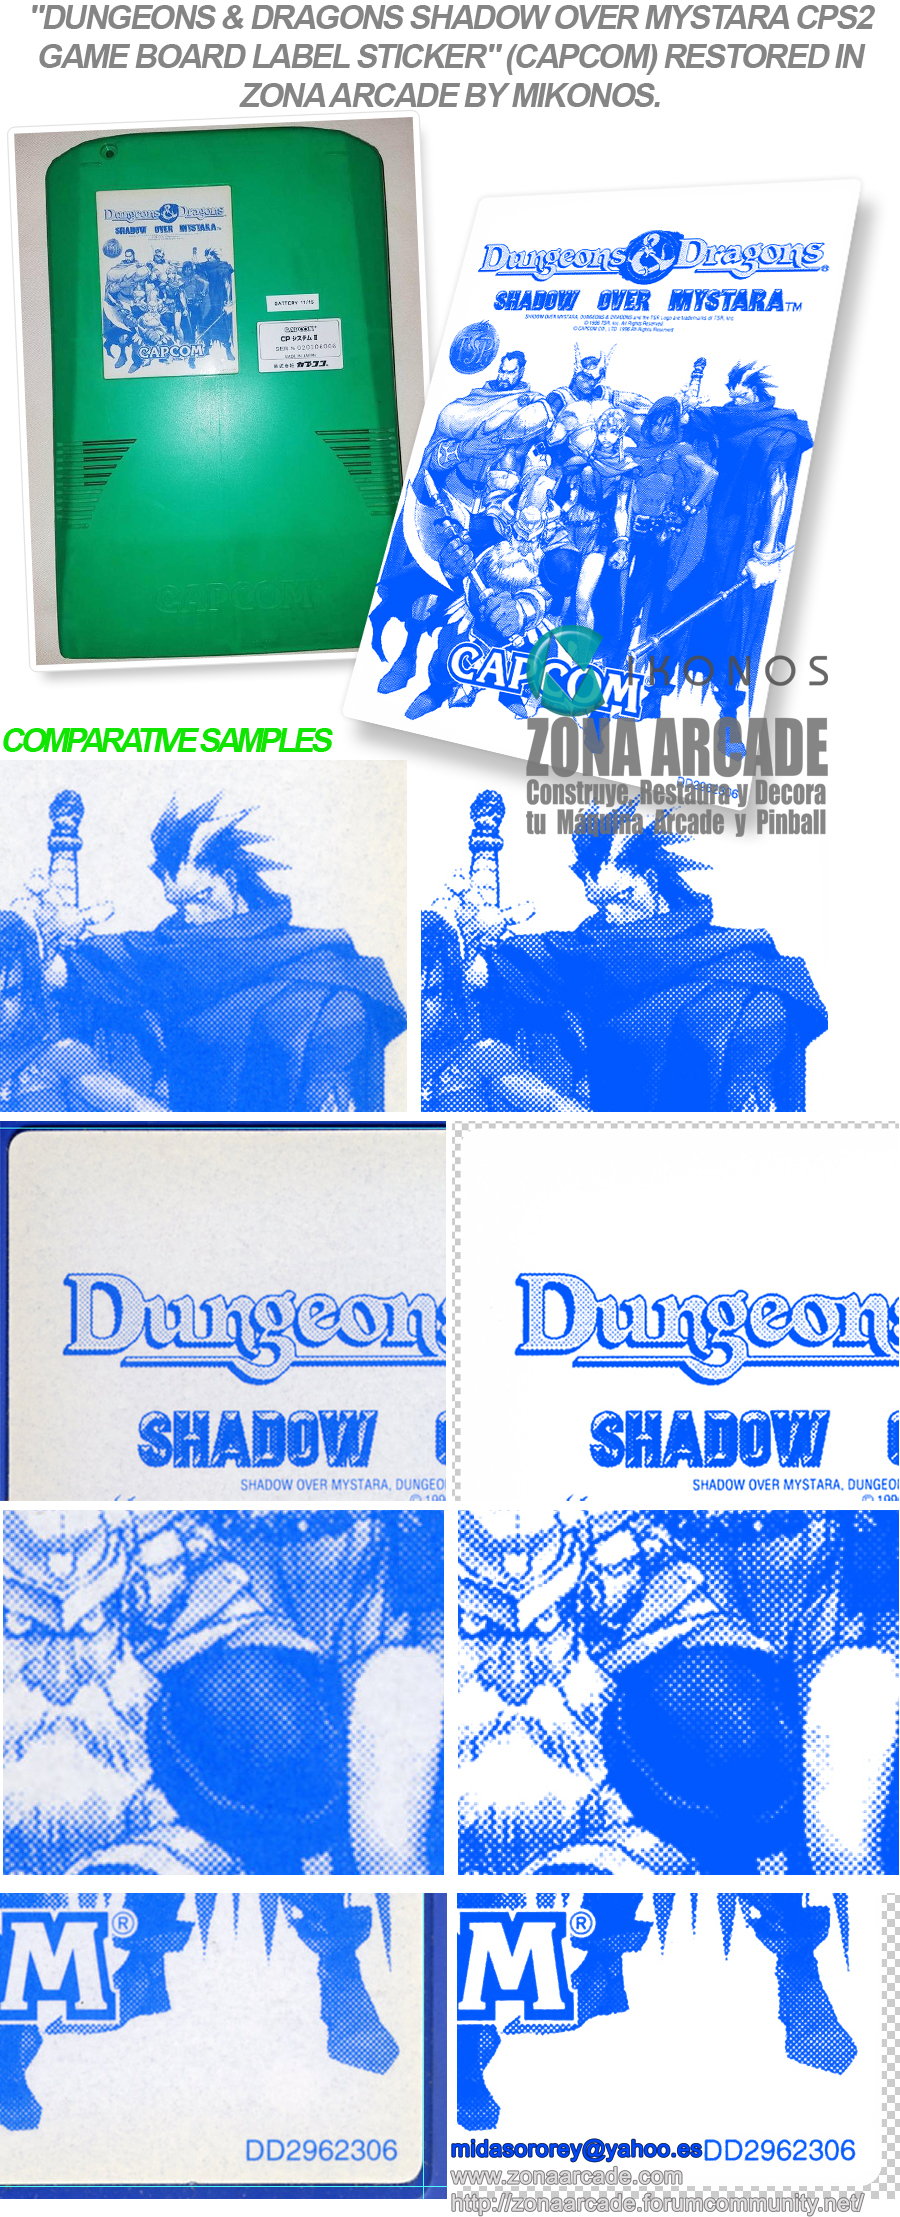 Dungeon-Dragons-Shadow-Over-Mystara-CPS2-Game-Board-Label-Sticker-Restored-Mikonos1